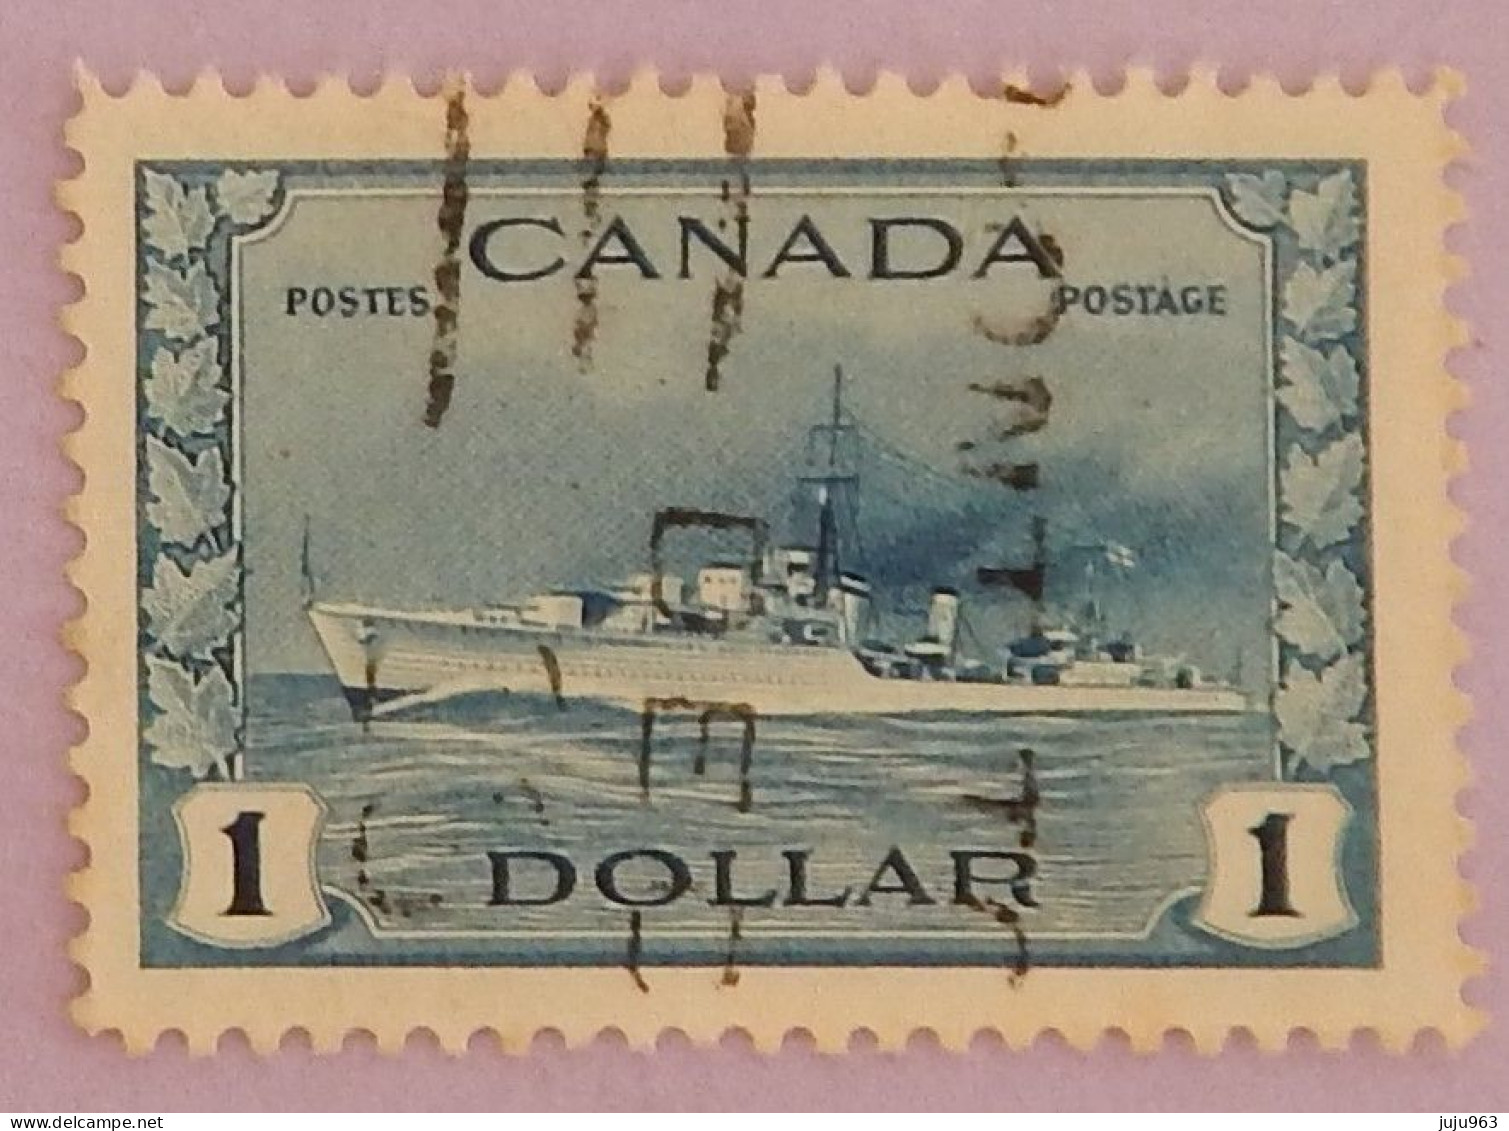 CANADA YT 218 OBLITÉRÉ "DESTROYER IROQUOIS" ANNÉES 1943/1948 - Gebraucht